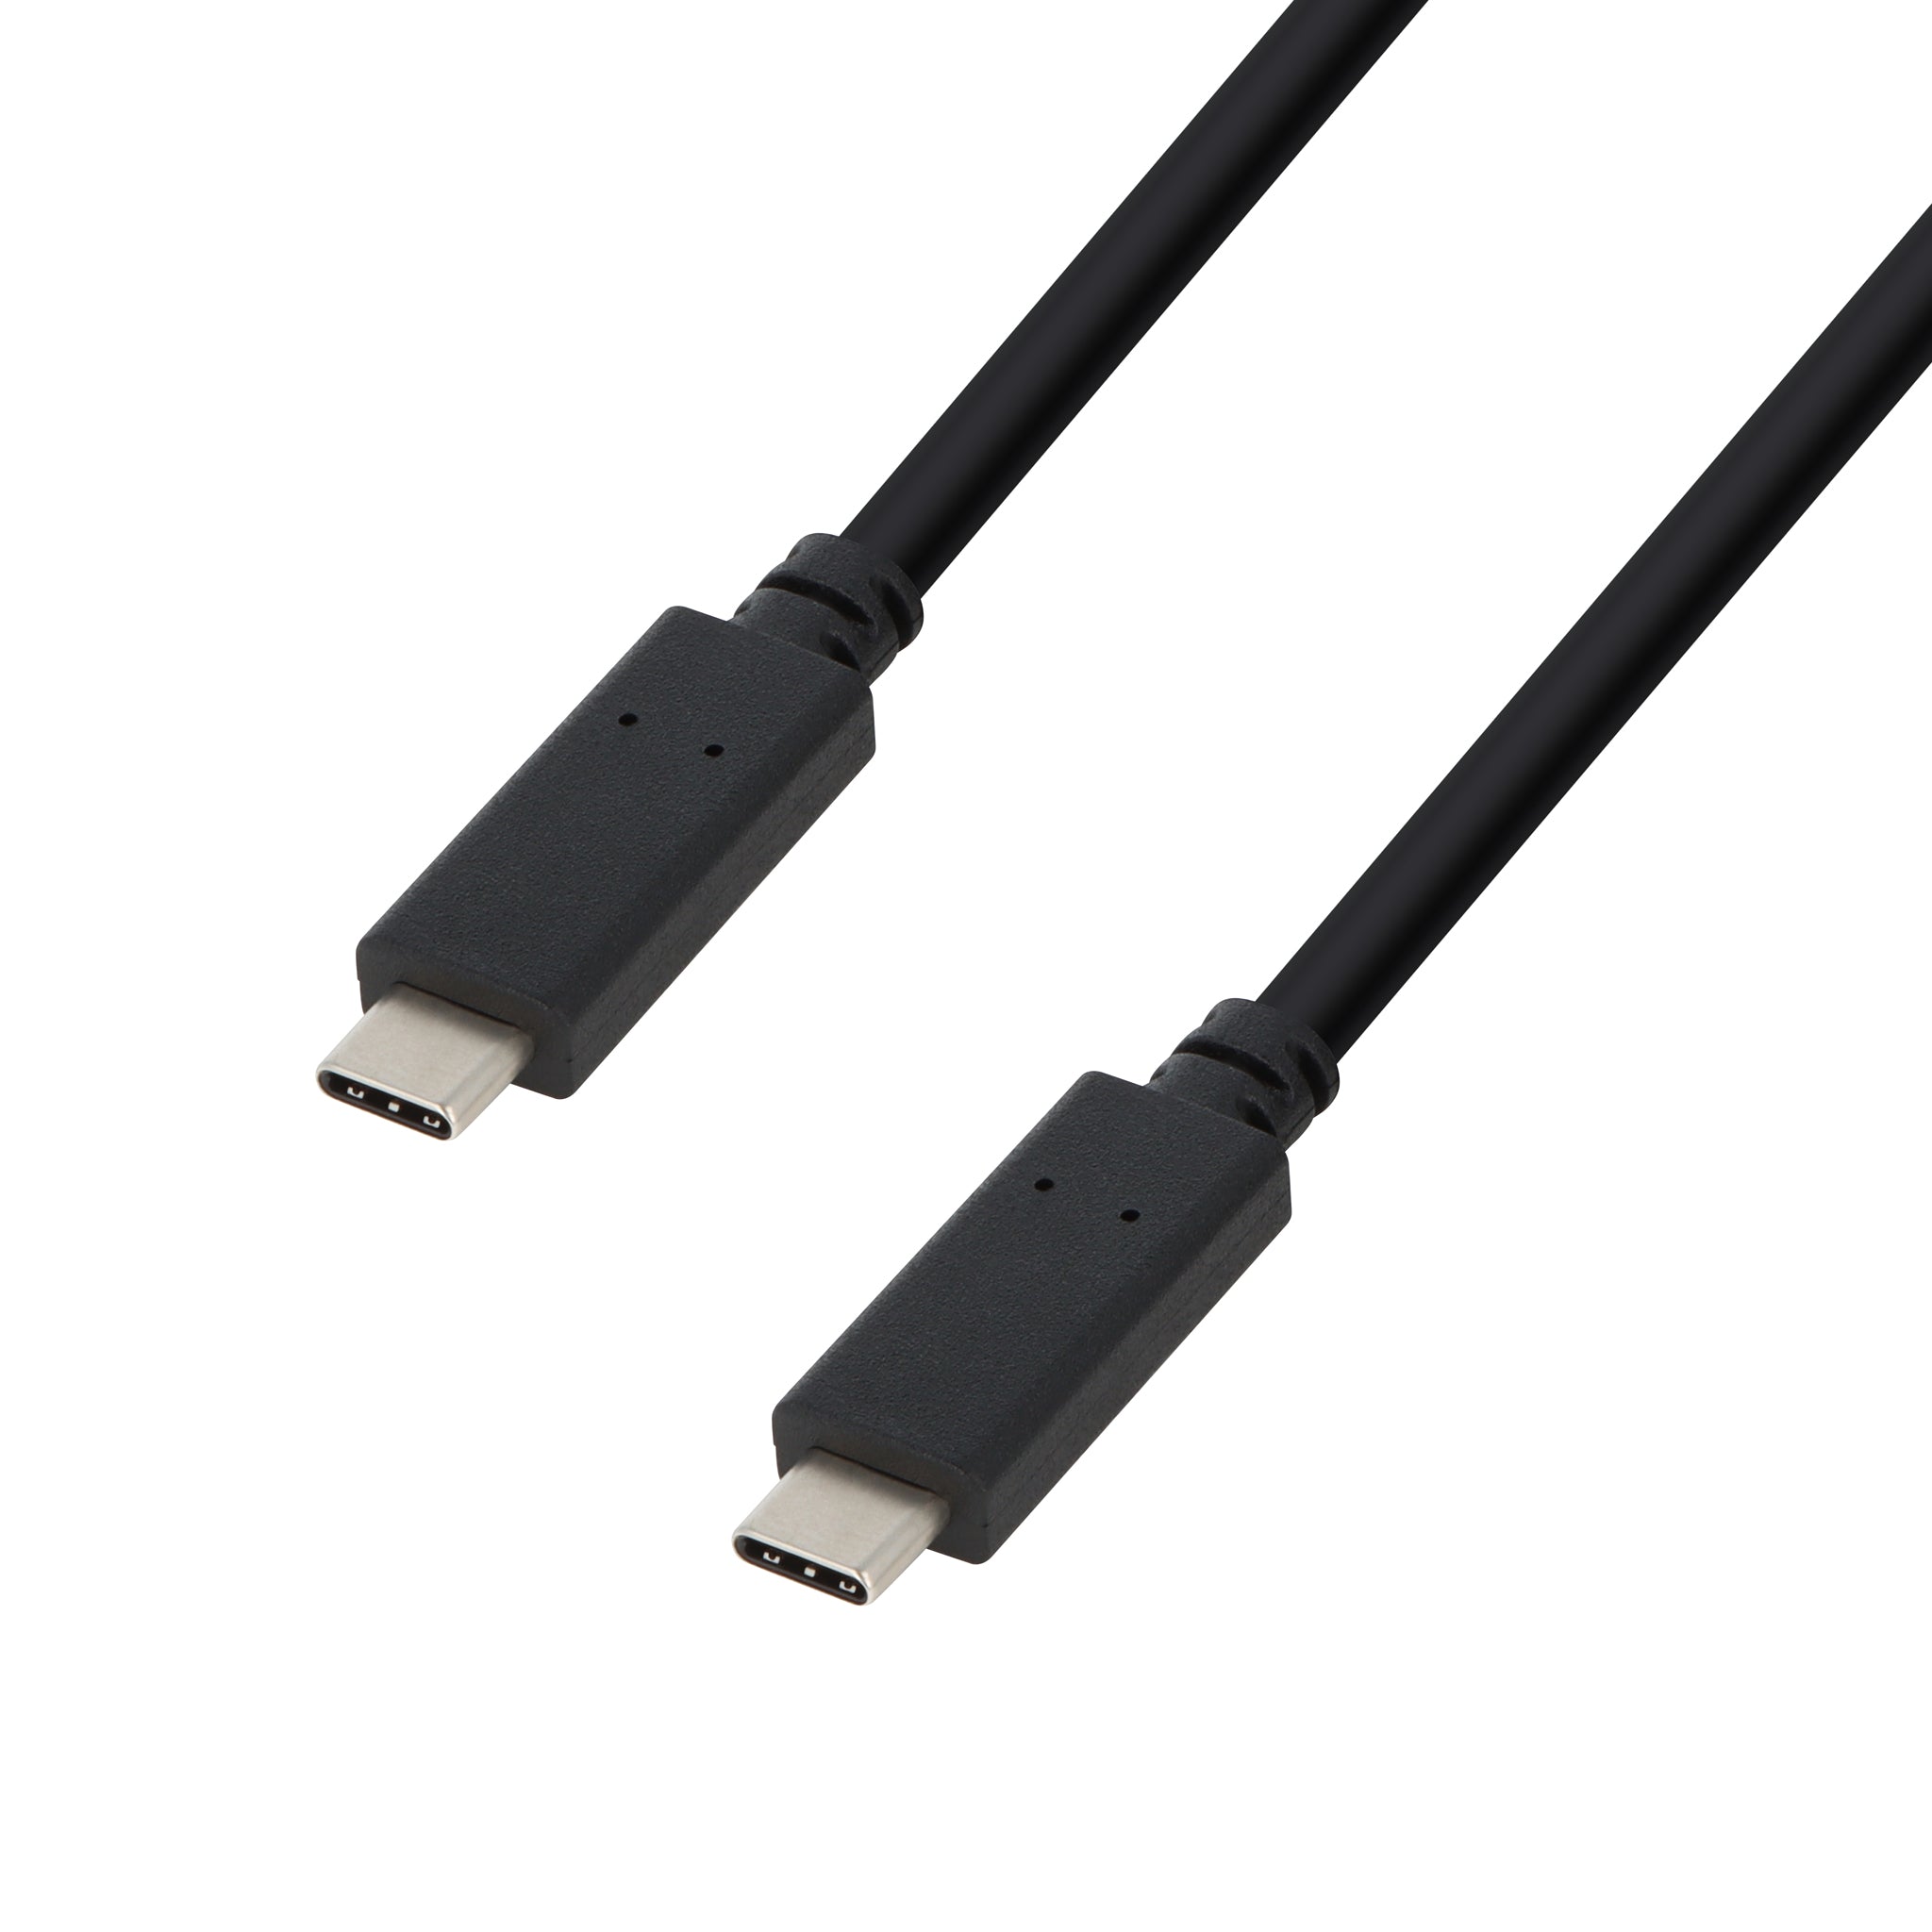 Câble USB Type-C vers jack TNB - Feu Vert